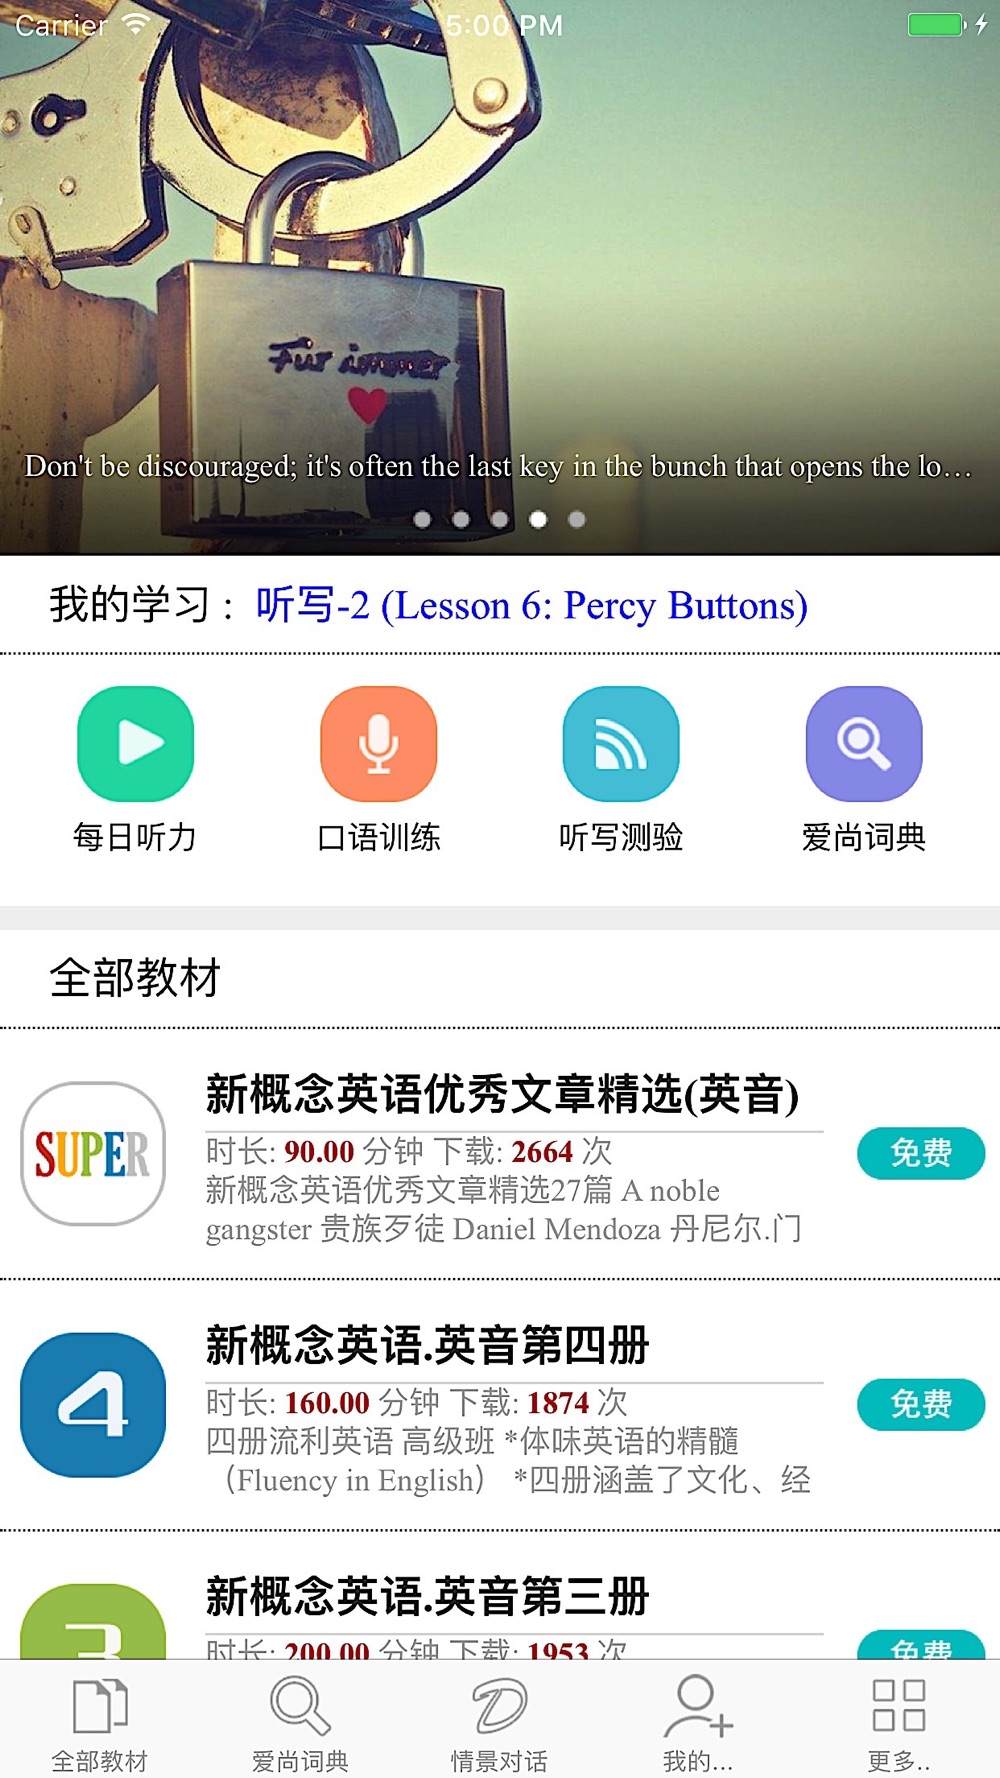 爱尚英语 新概念英语听 读 写download App For Iphone Steprimo Com